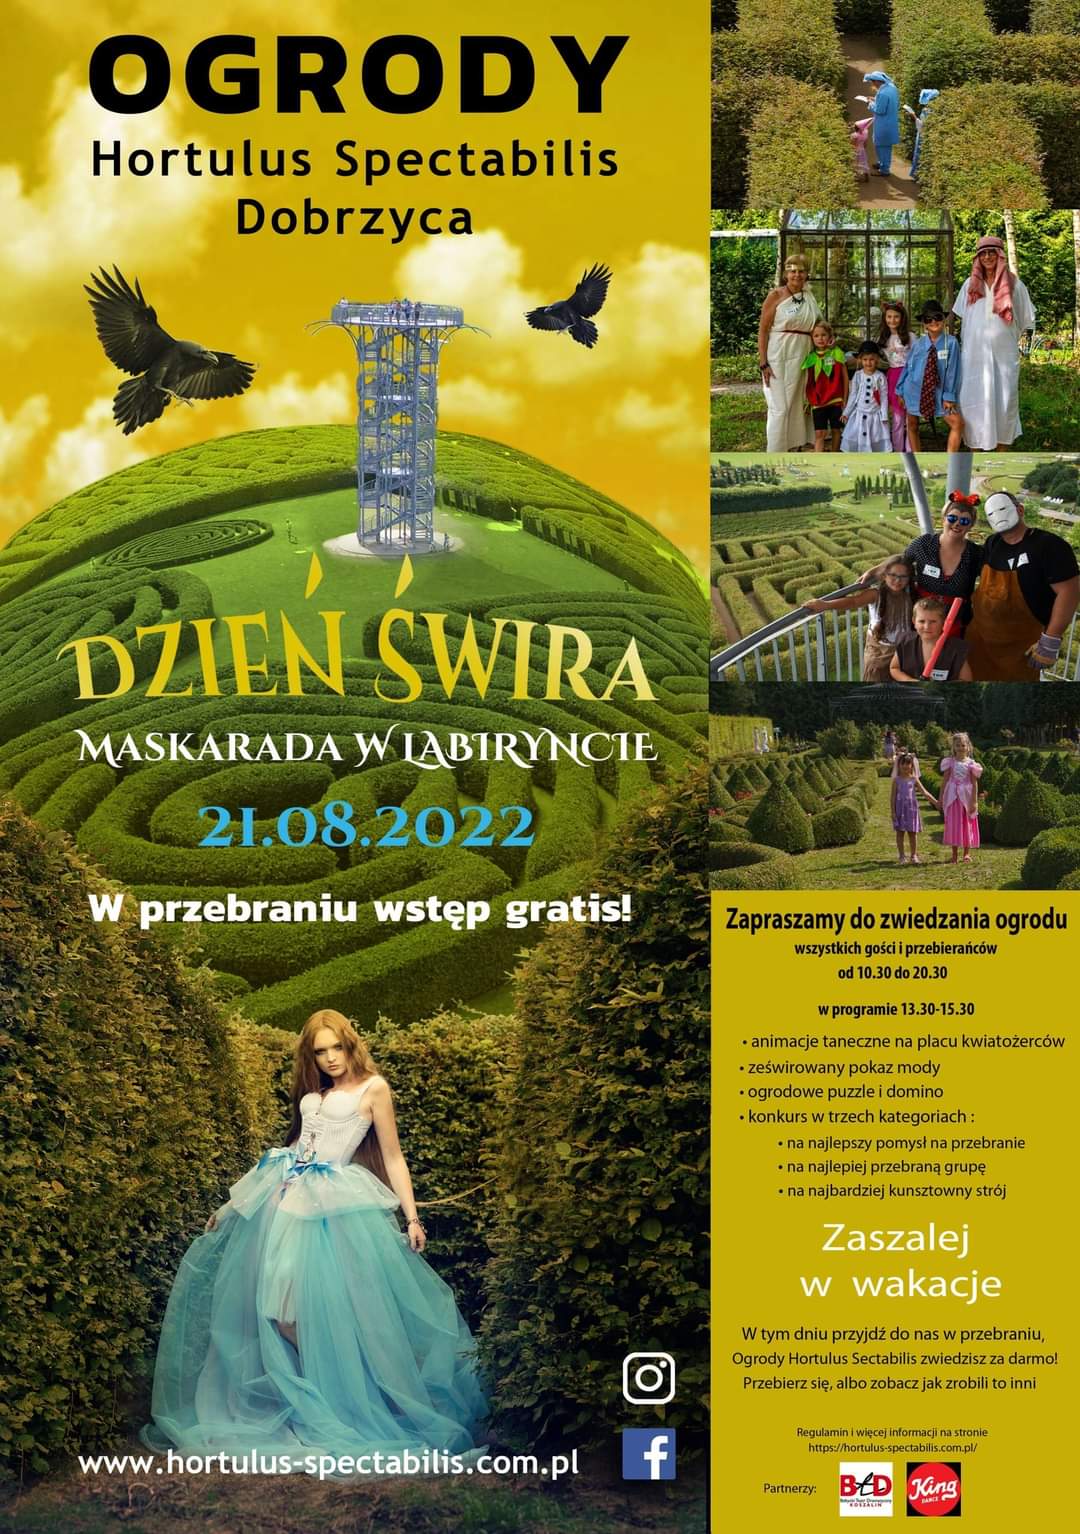 Ogrody Hortulu Spectabilis w Dobrzycy zapraszają na Dzień Świra w dniu 21 sierpnia 2022